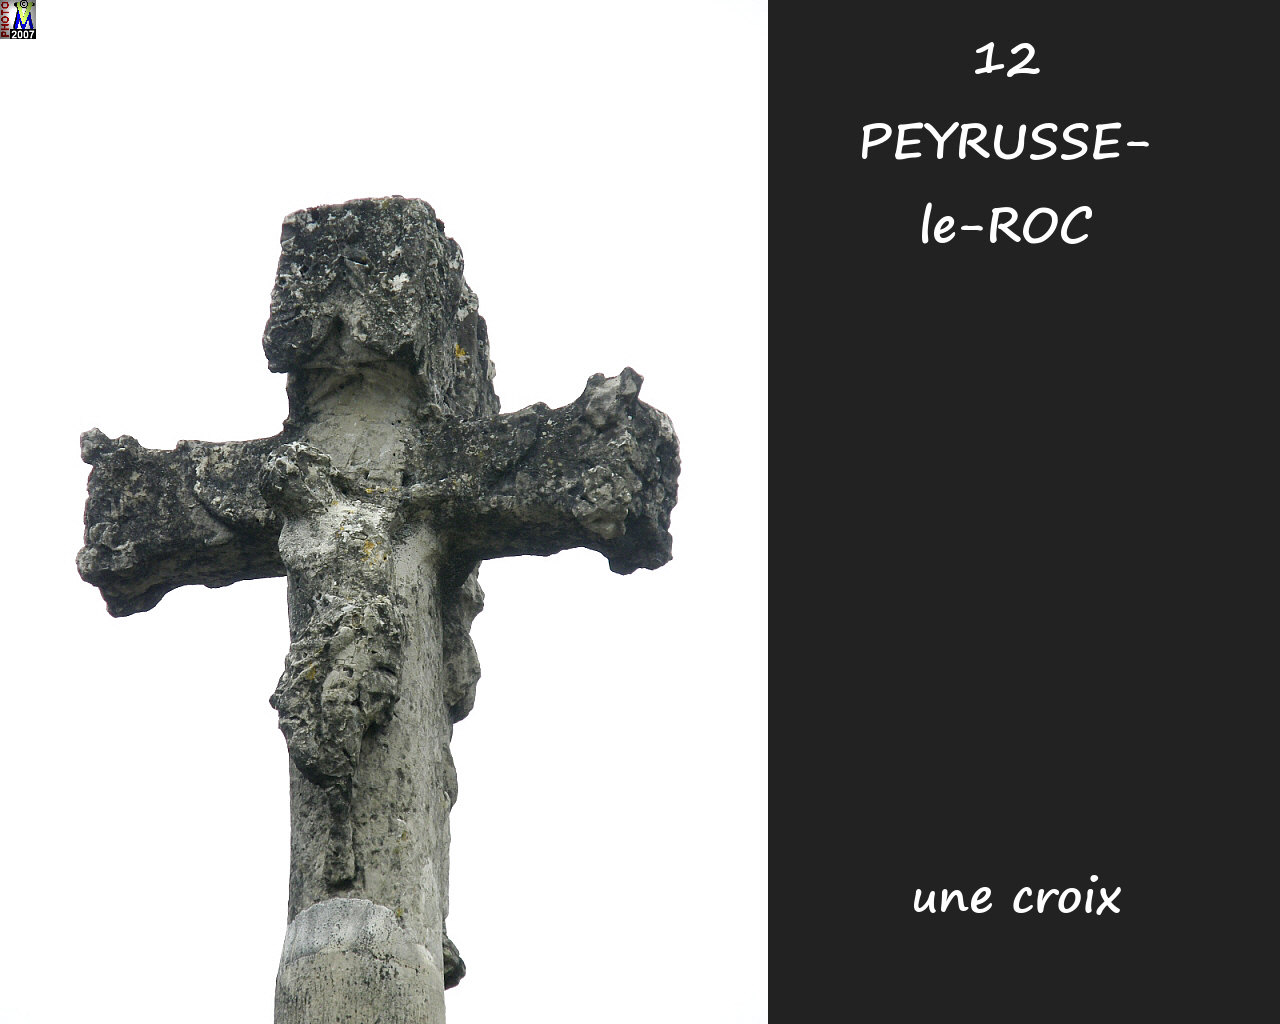 12PEYRUSSE-ROC_village-croix_102.jpg